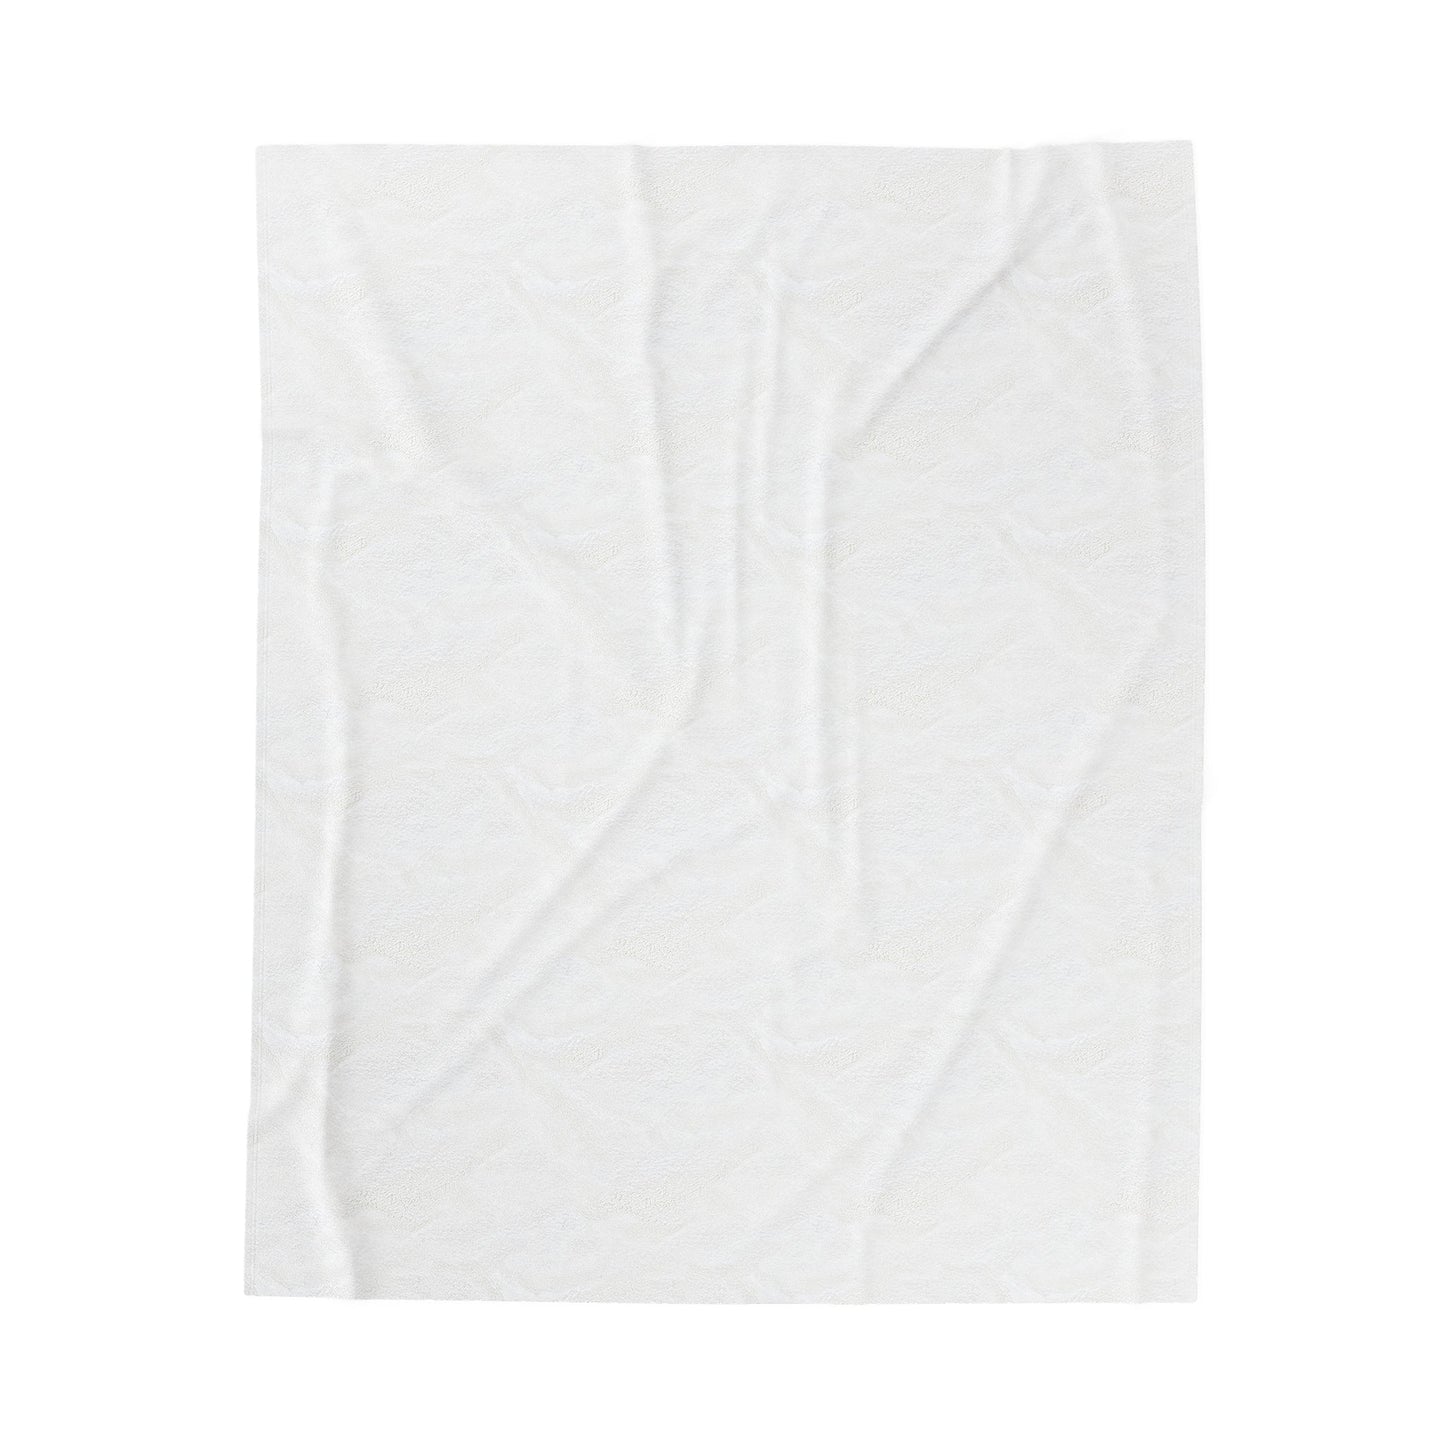 JZay (Jay-Zay) - Plush Blanket-Plush Blankets-Mr.Zao - Krazy Art Gallery